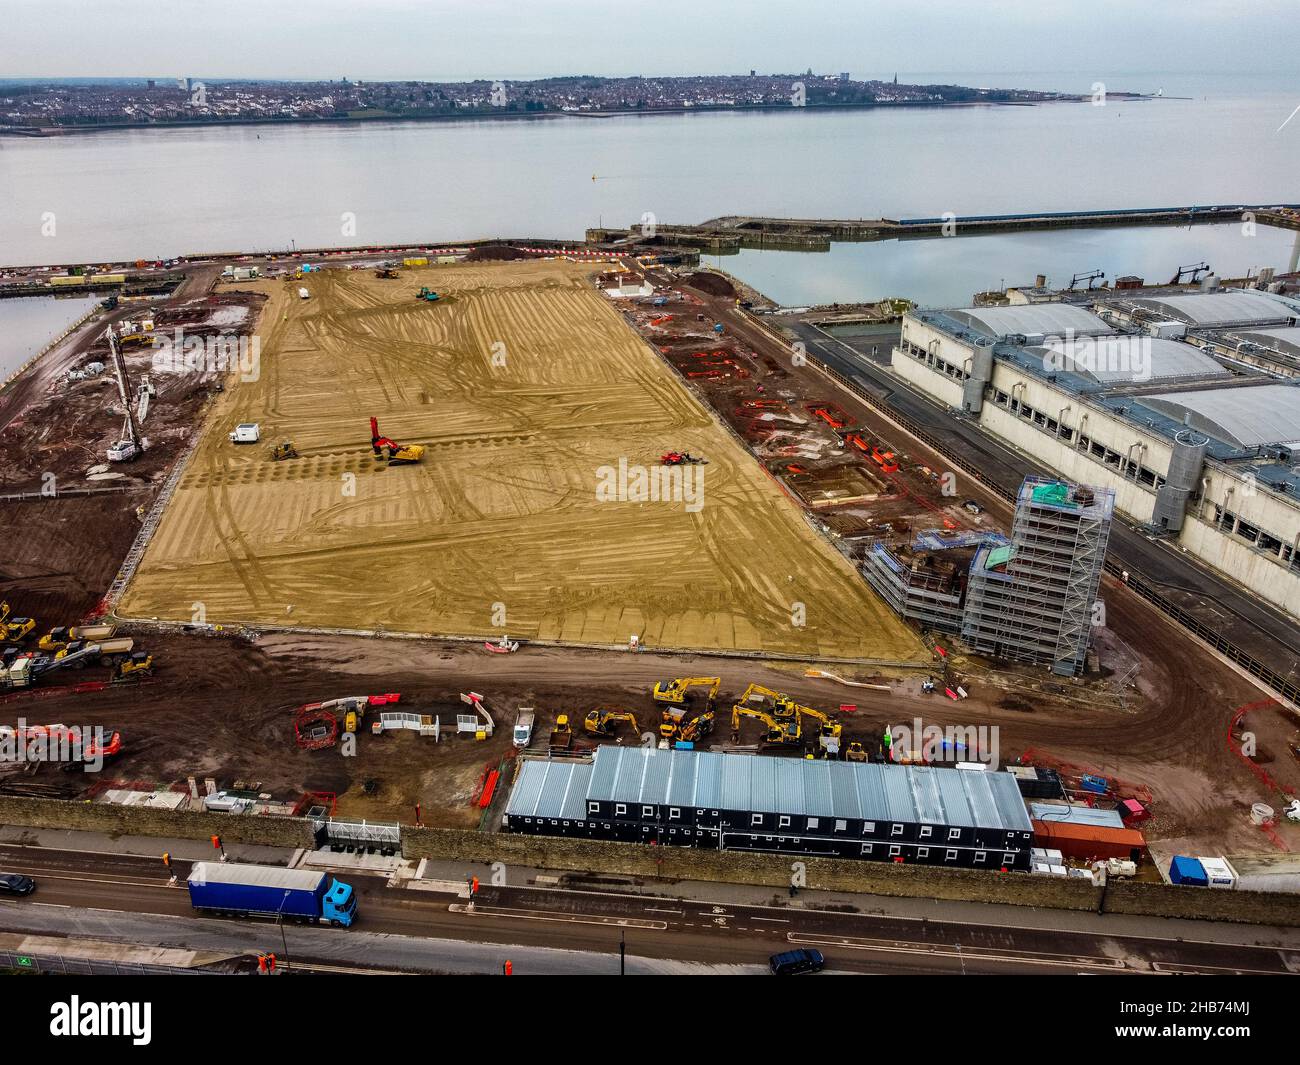 Una vista aérea de los trabajos de construcción en el lugar del nuevo estadio del club de fútbol Everton que se está construyendo en Bramley-Moore Dock. Fecha de la foto: Viernes 17 de diciembre de 2021. Foto de stock